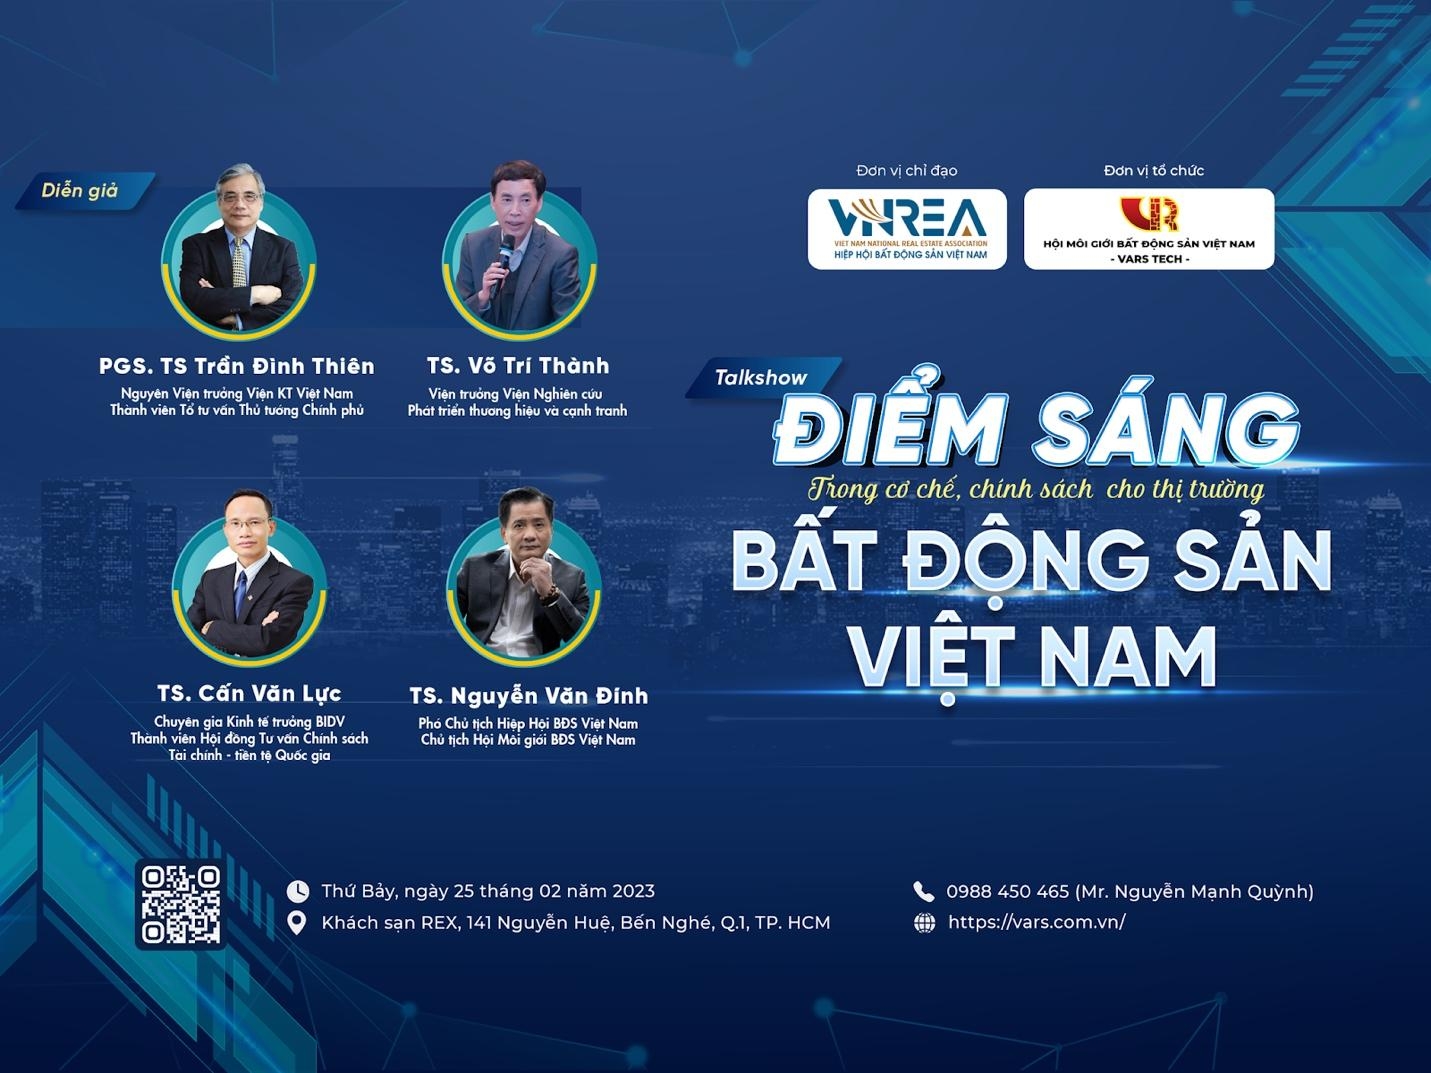 Sắp diễn ra toạ đàm  “Điểm sáng trong cơ chế, chính sách cho thị trường bất động sản Việt Nam” tại Thành phố Hồ Chí Minh